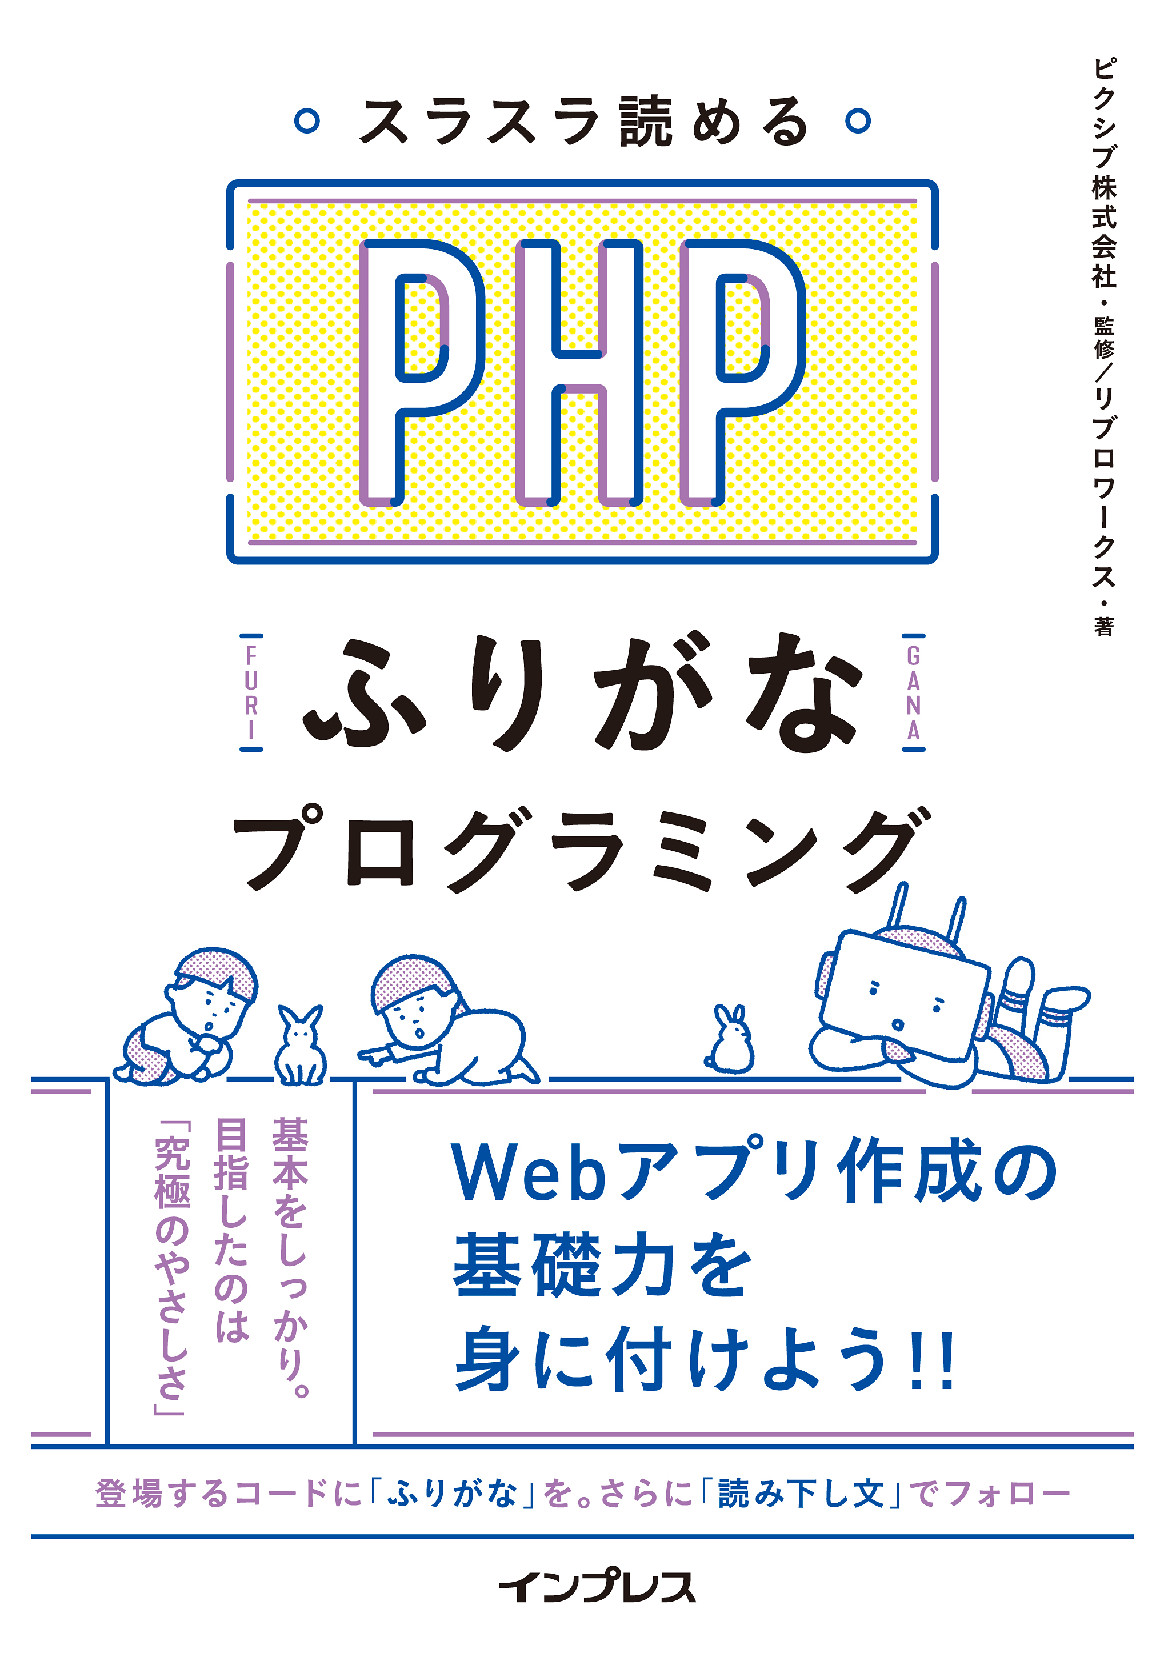 スラスラ読める Phpふりがなプログラミング 委託 達人出版会